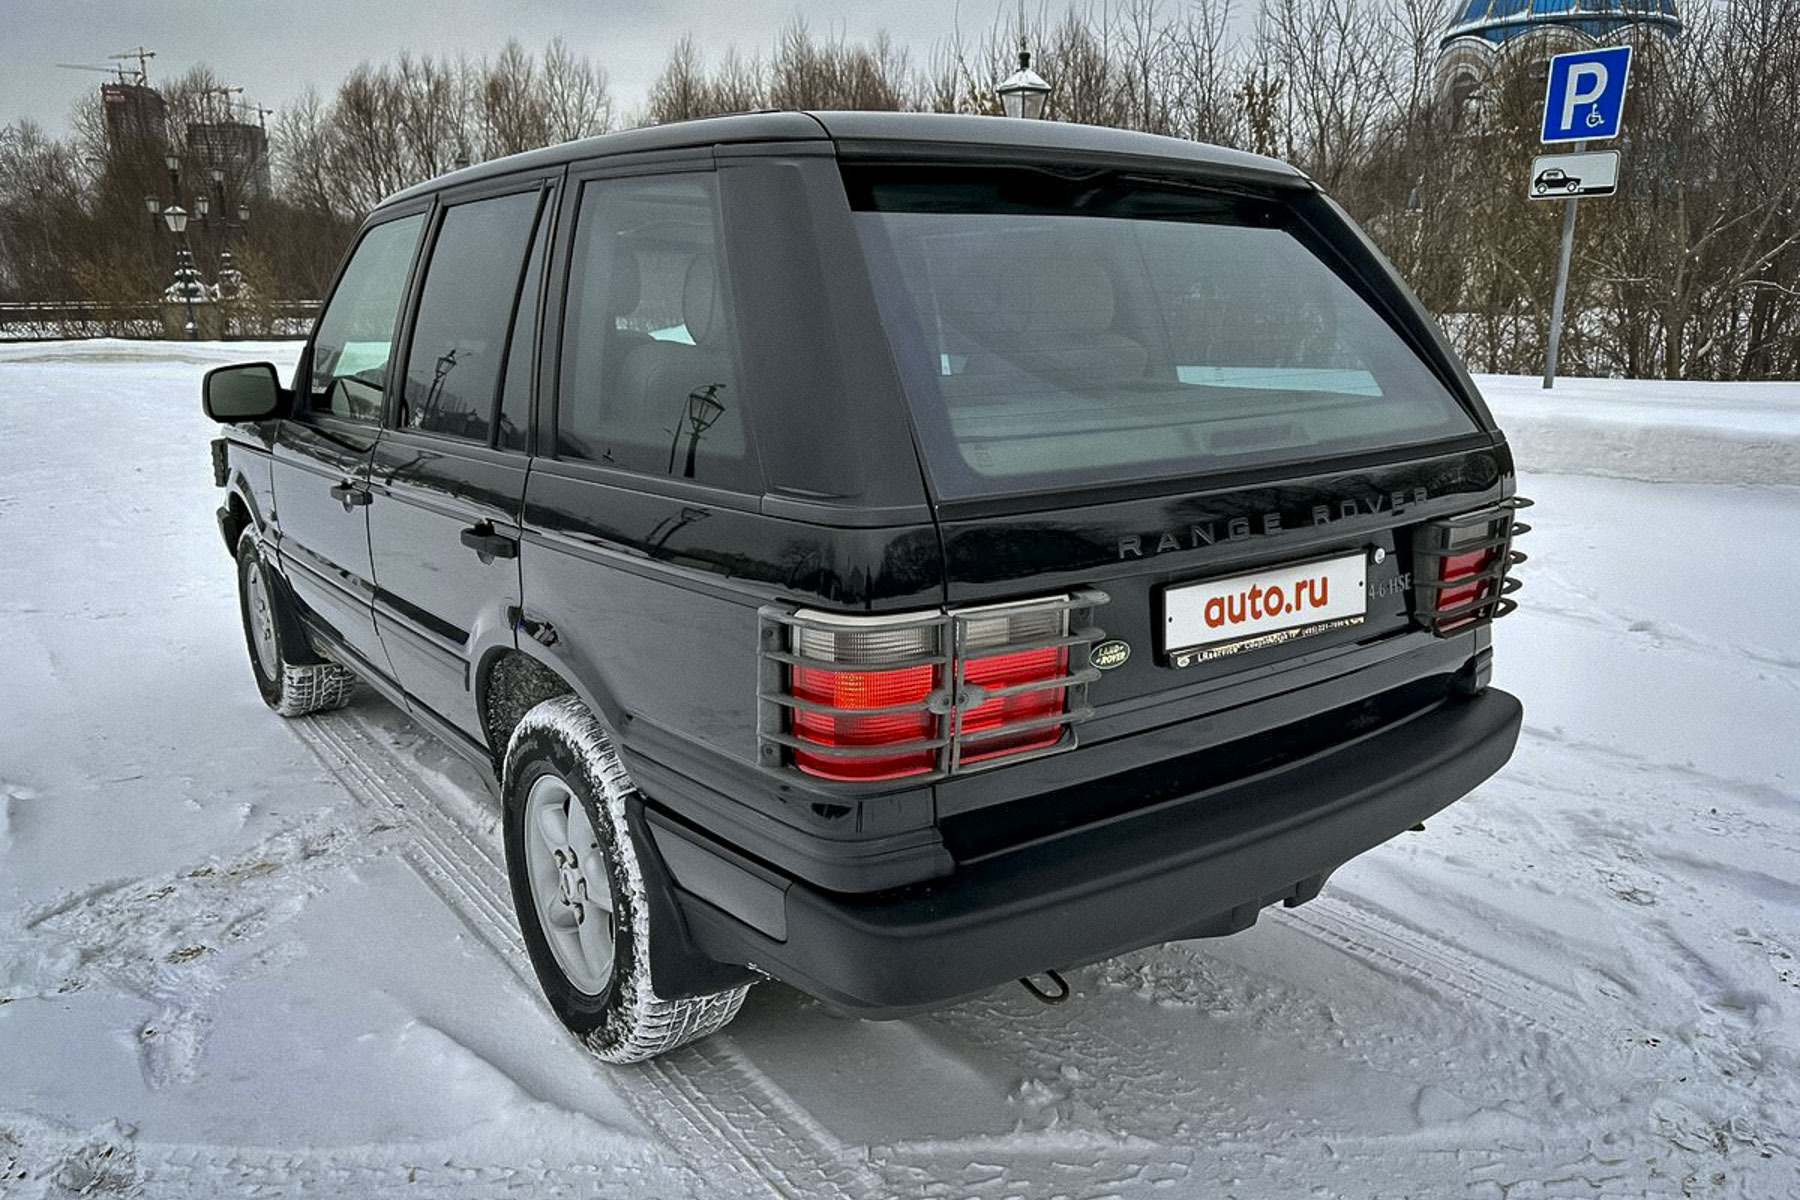 Почти новый 23-летний Range Rover продают в Москве за два миллиона рублей5